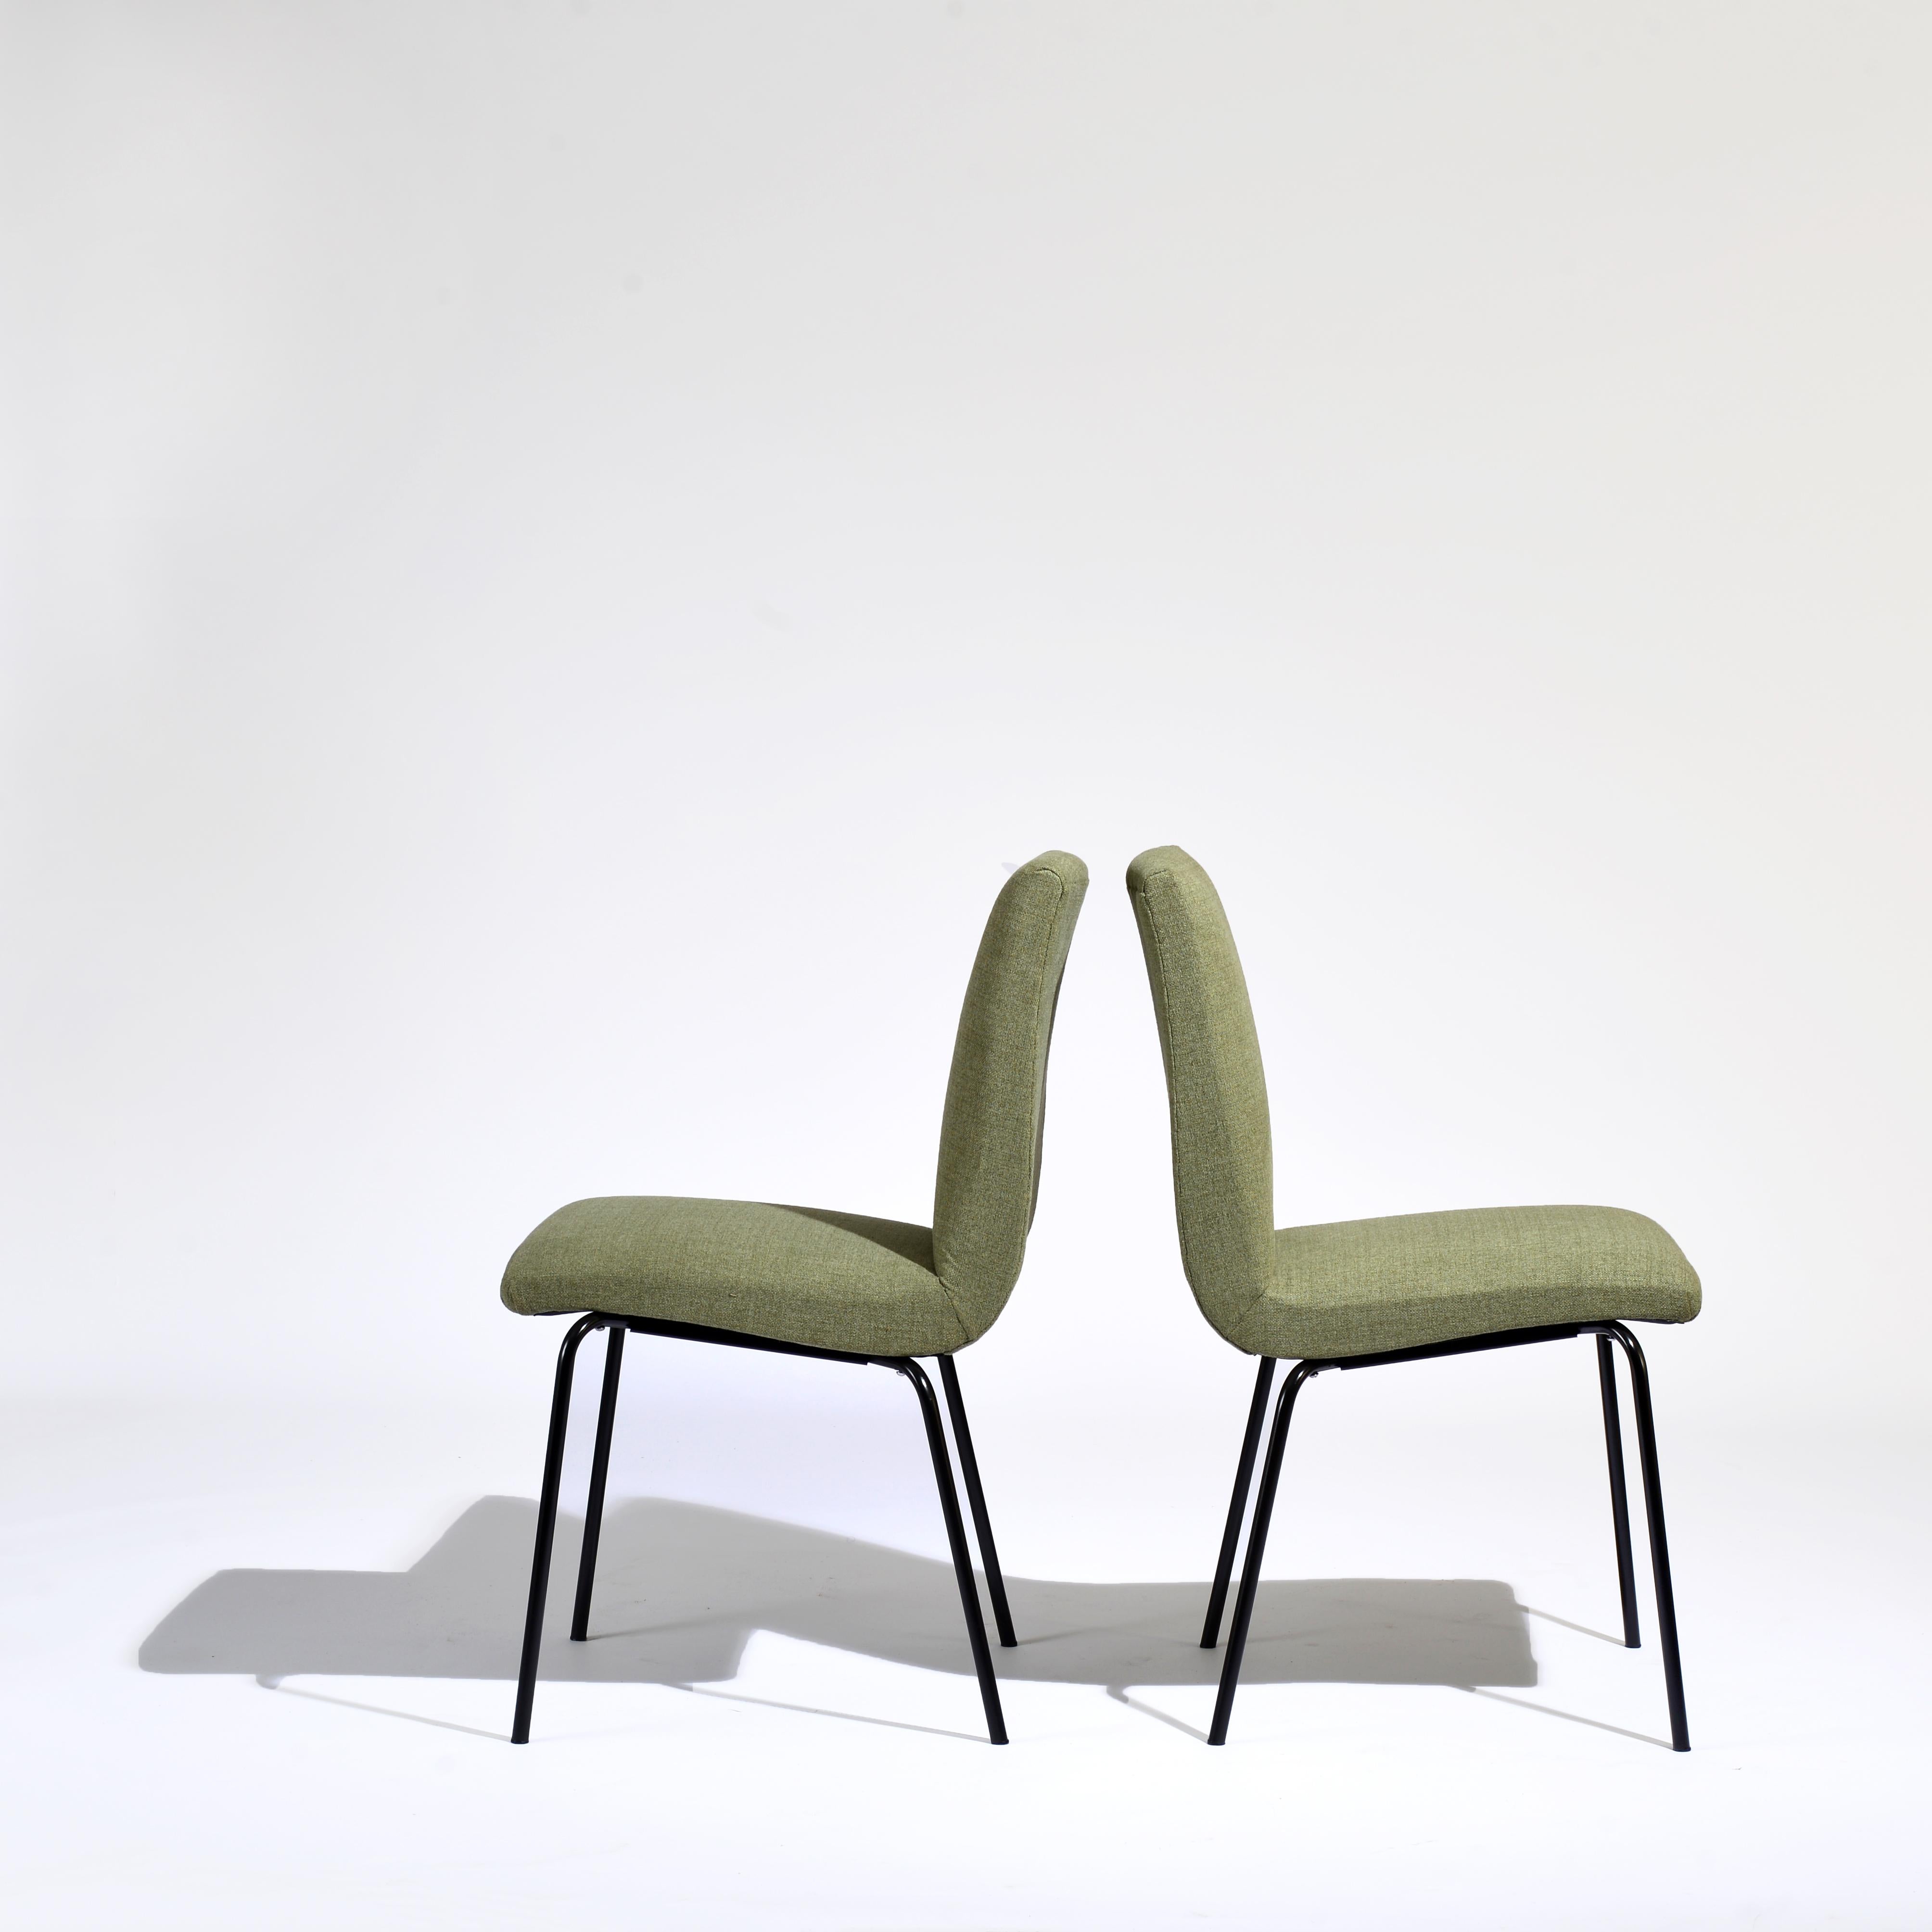 Paire de chaises, design de Pierre Calle, édité par Meurop dans les années 60, de la série appelée 